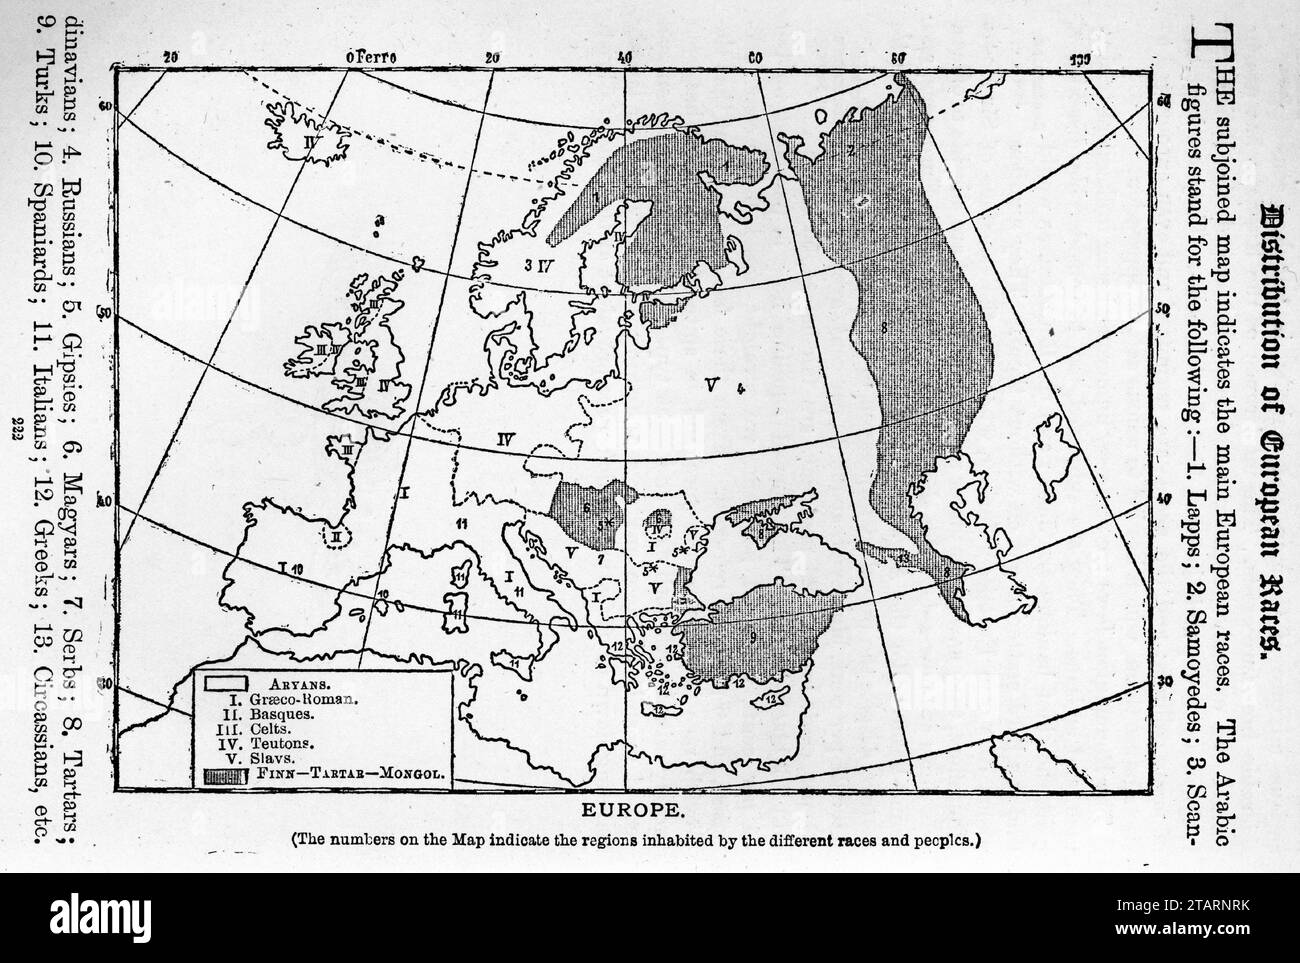 Mappa che mostra la distribuzione delle razze europee. Pubblicato intorno al 1887 Foto Stock